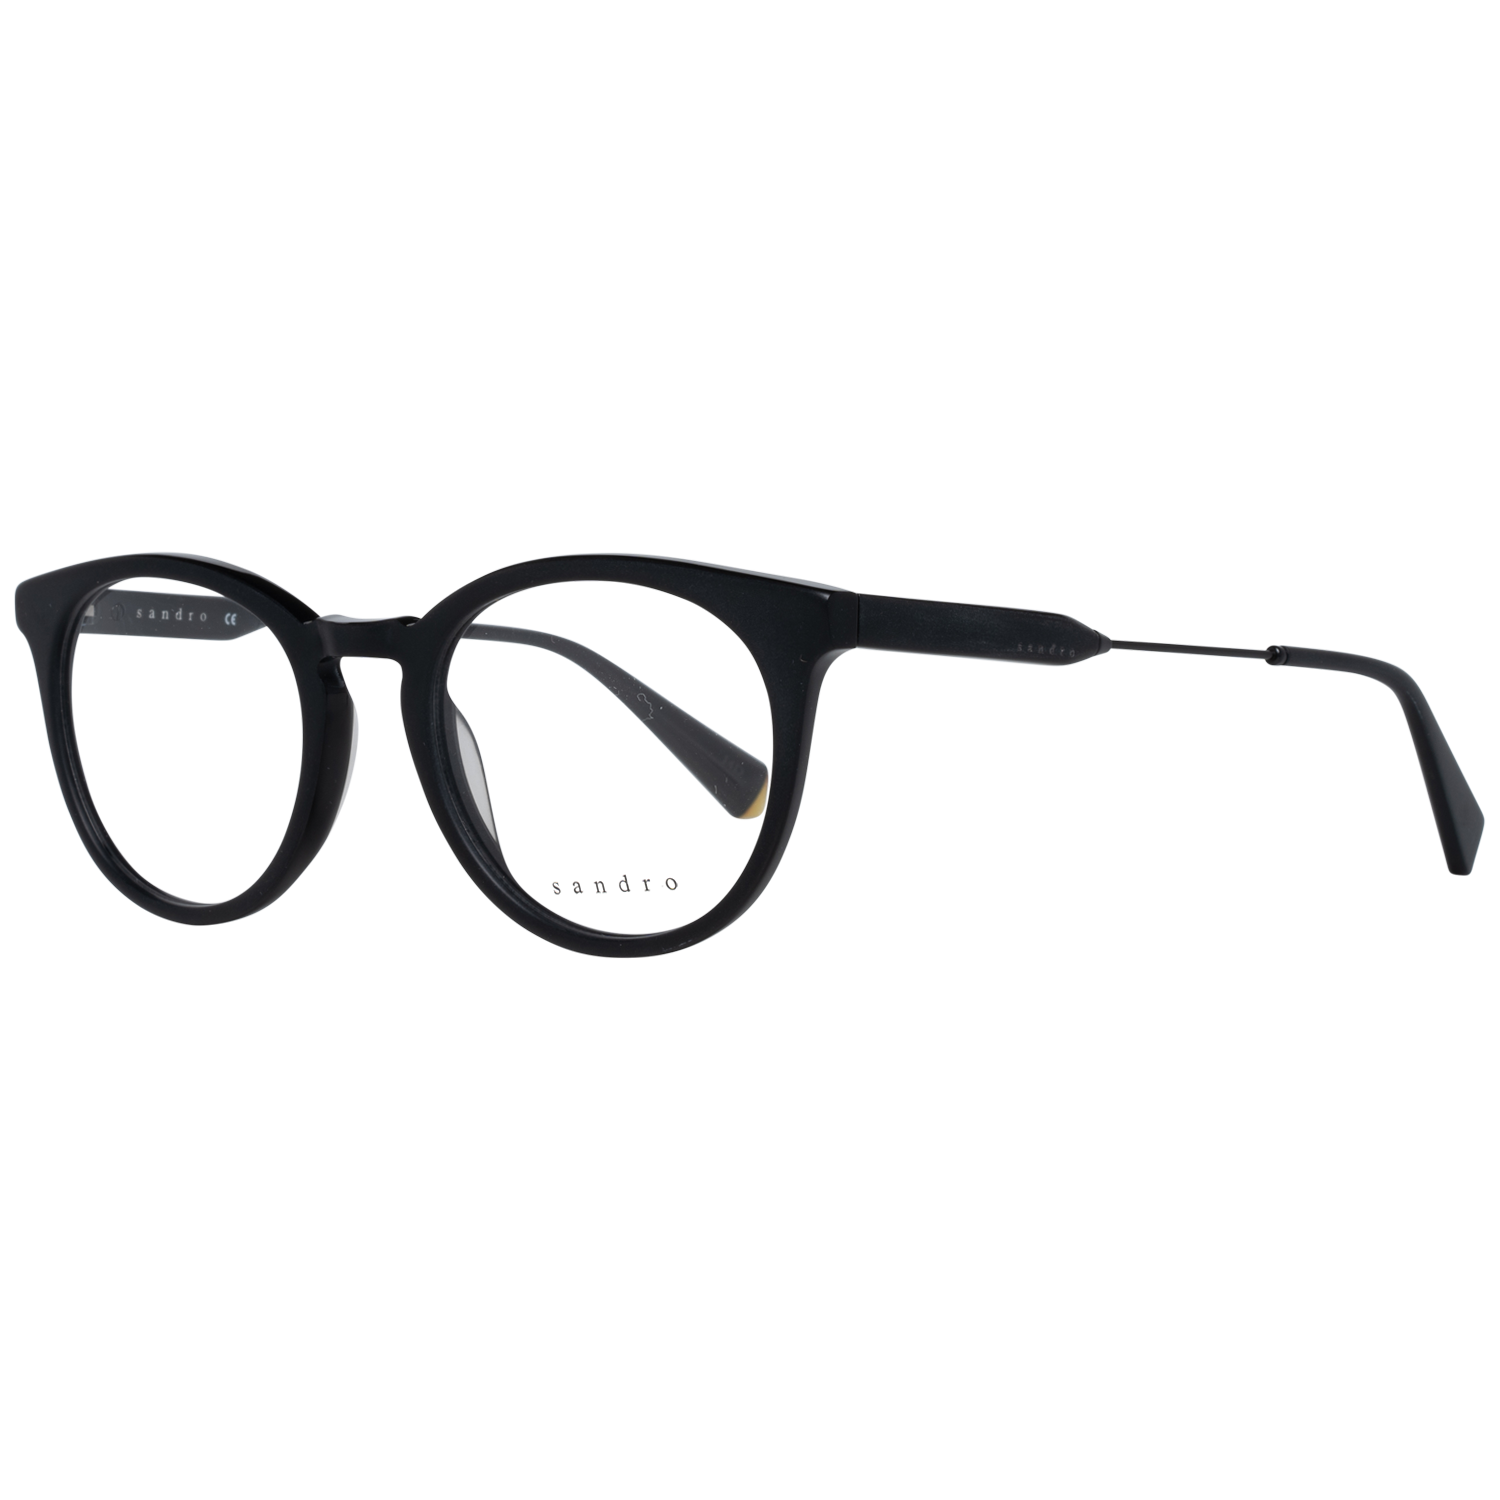 Sandro Frames Sandro Optical Frame SD1005 001 50 Eyeglasses Eyewear UK USA Australia 